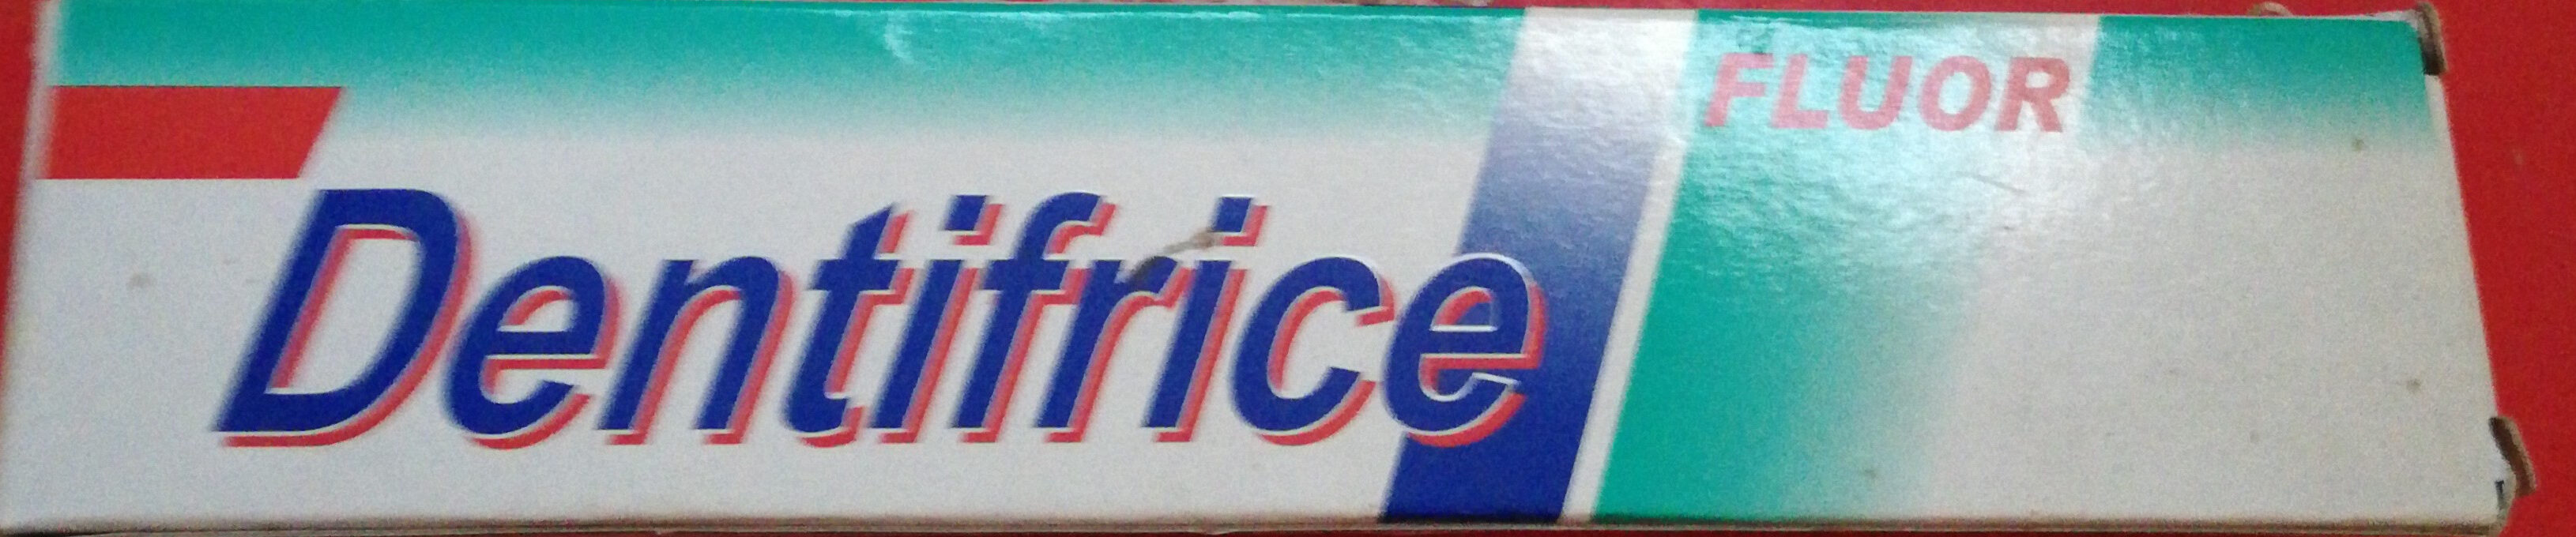 Dentifrice - Produkt - fr